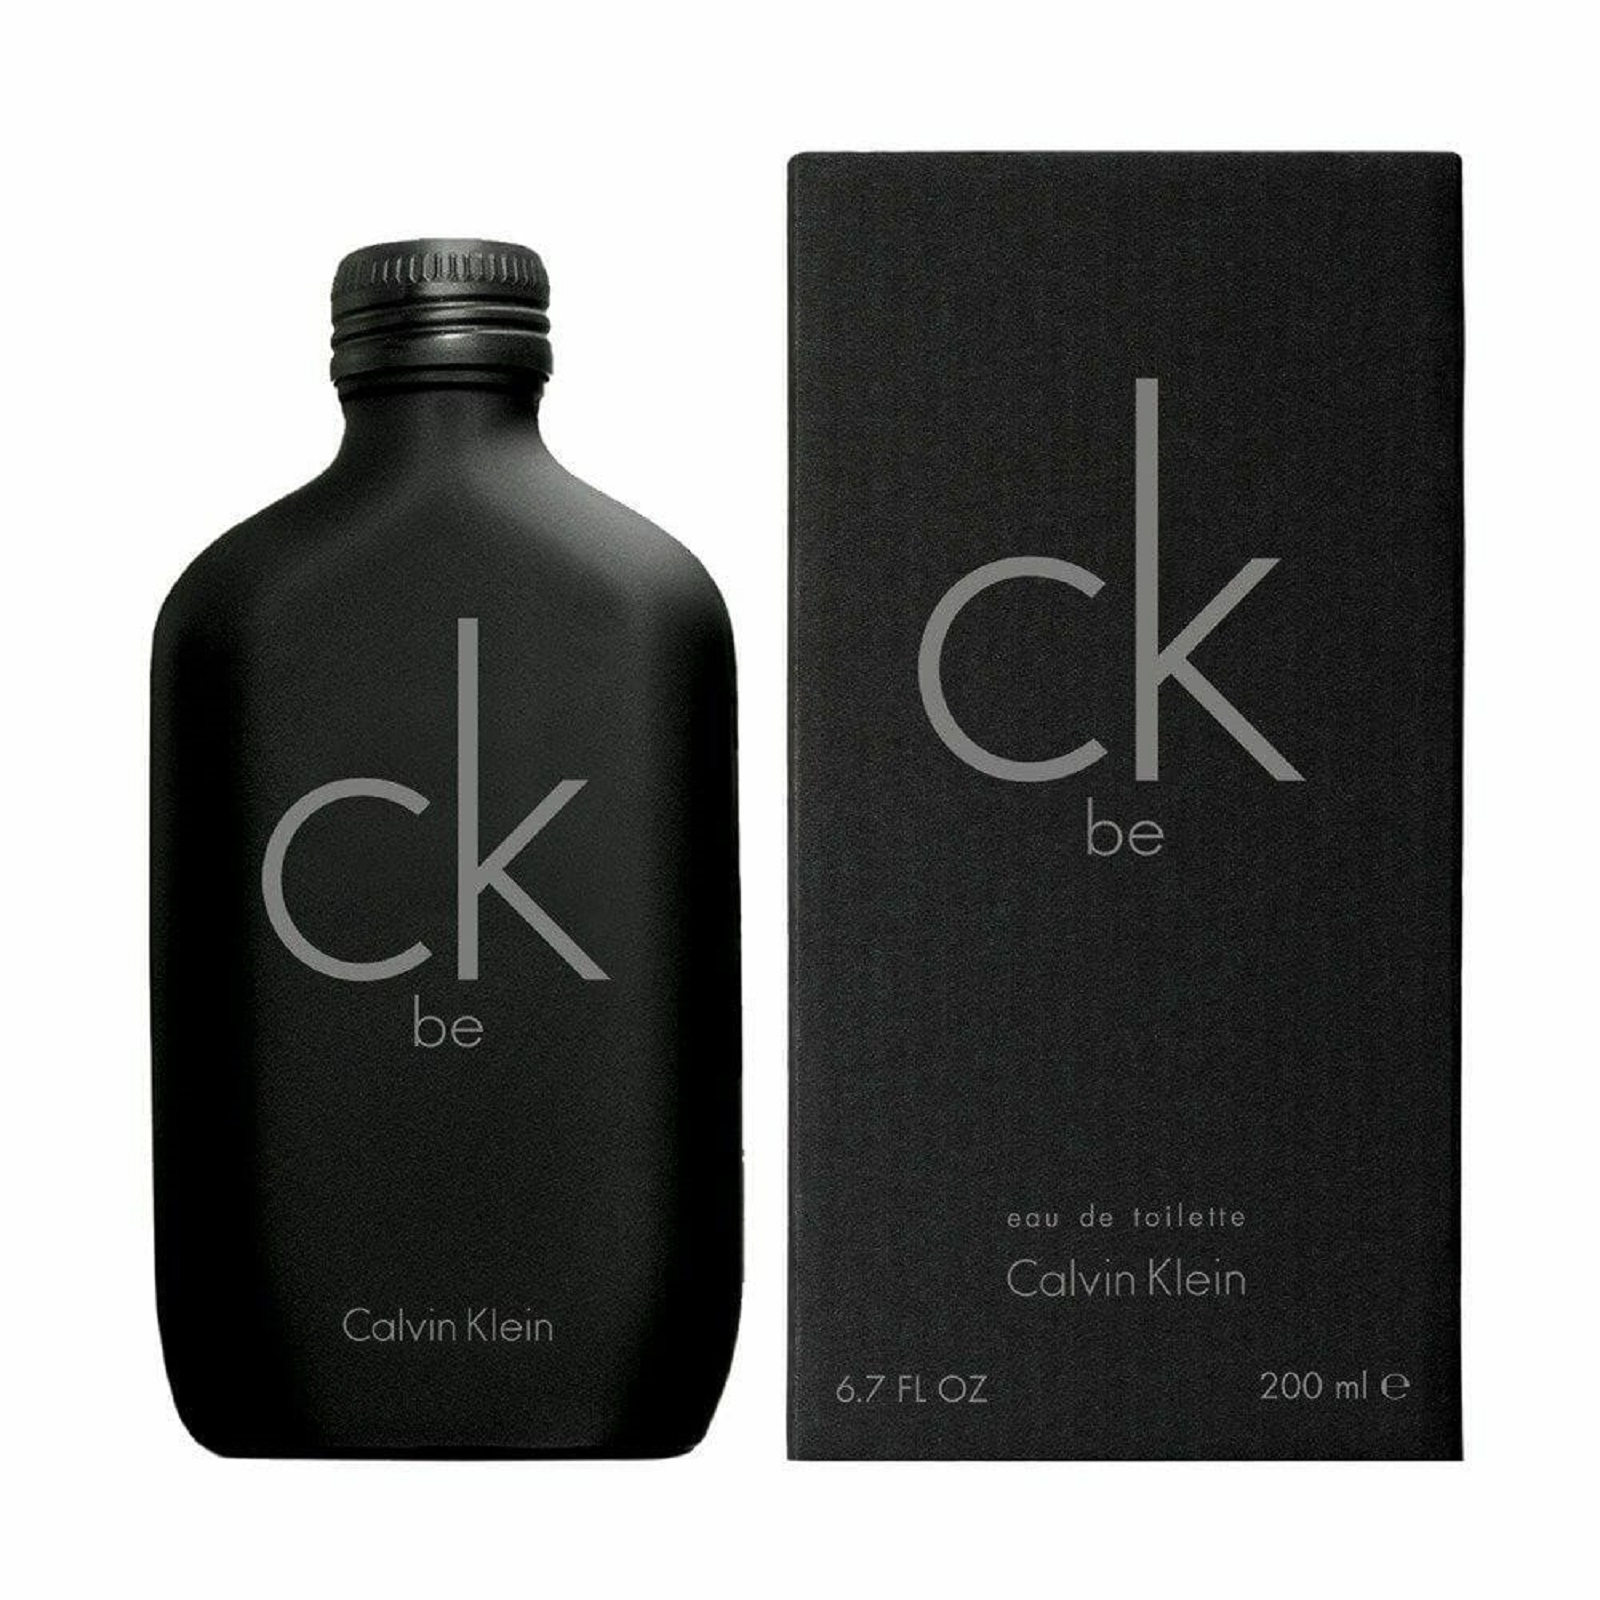 Perfume Hombre Ck Be Eau de Toilette 200ml Calvin Klein